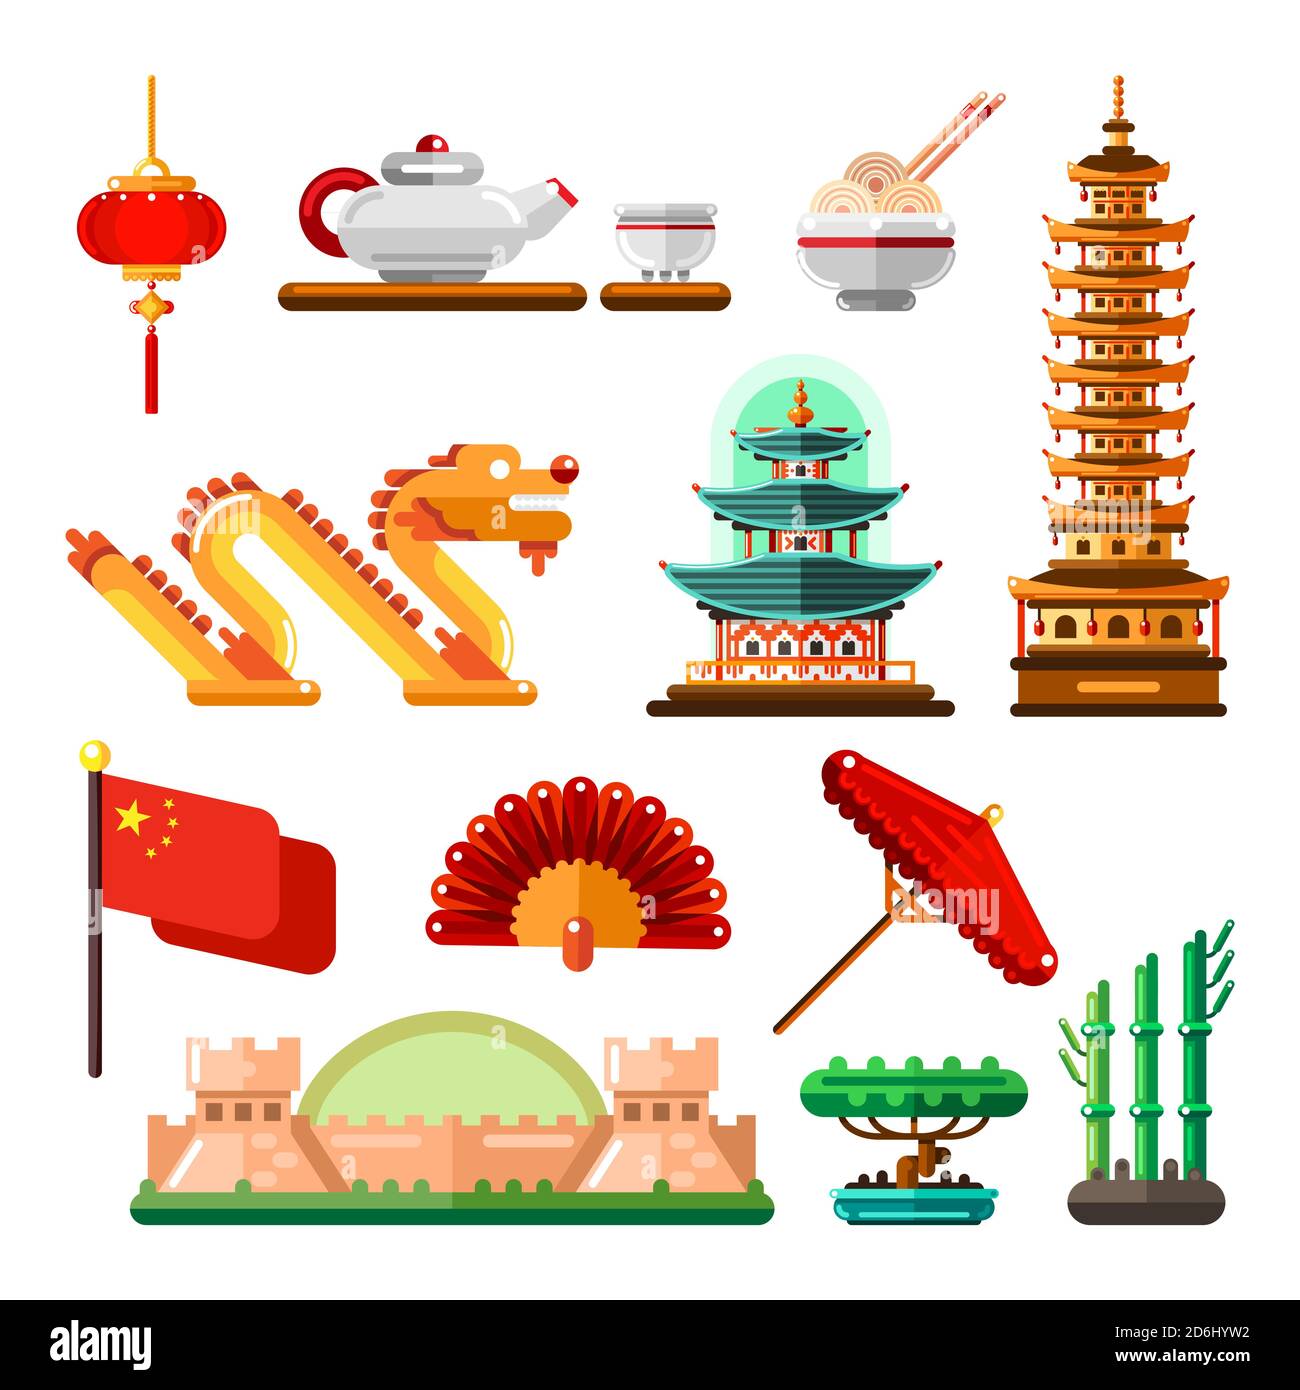 Voyage en Asie, Chine icônes et éléments de design isolés ensemble. Symboles, repères et nourriture de la culture chinoise vectorielle. Illustration de Vecteur